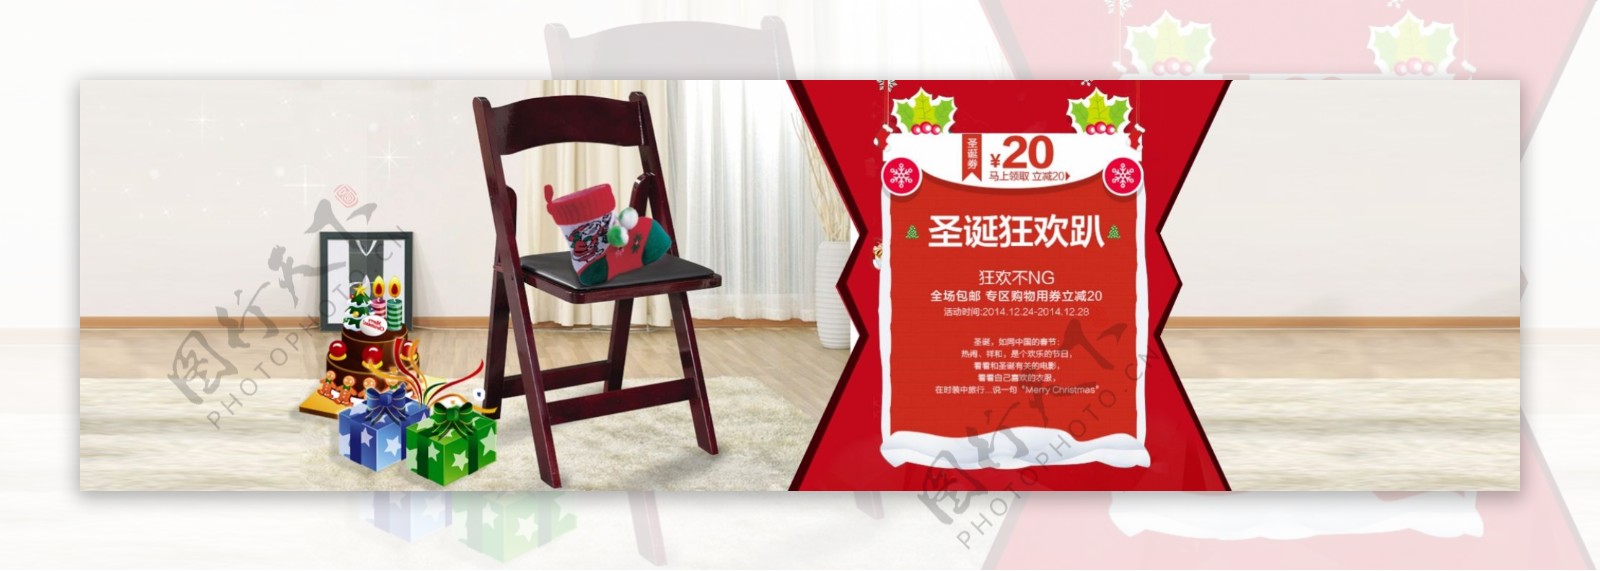 淘家具圣诞节促销海报设计PSD素材